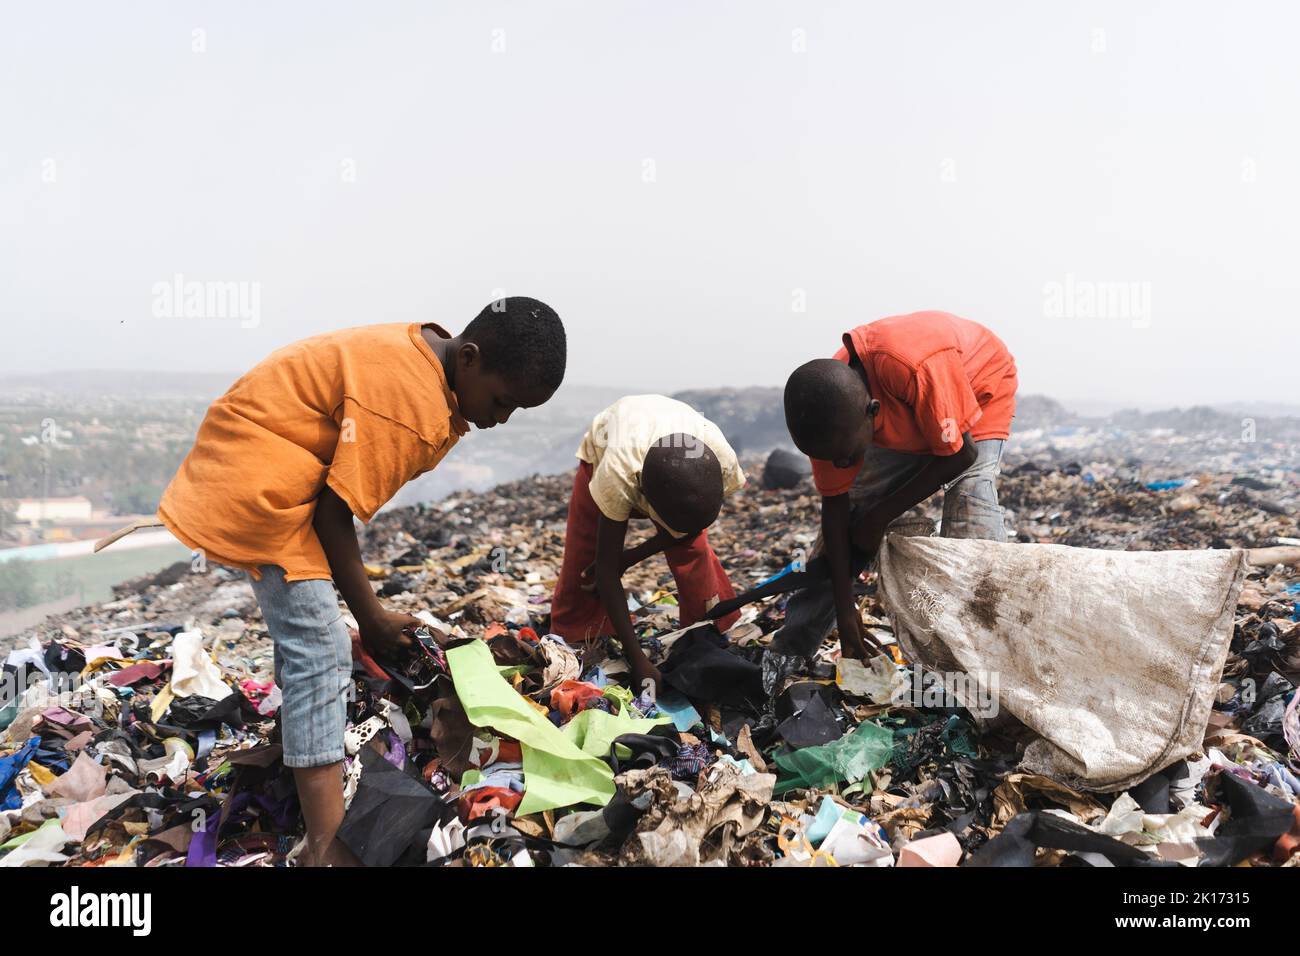 Gruppe obdachloser Straßenkinder, die in einer dampfenden Deponie in einer afrikanischen Metropole Müll sammeln; Konzept von Armut und Vernachlässigung von Kindern Stockfoto